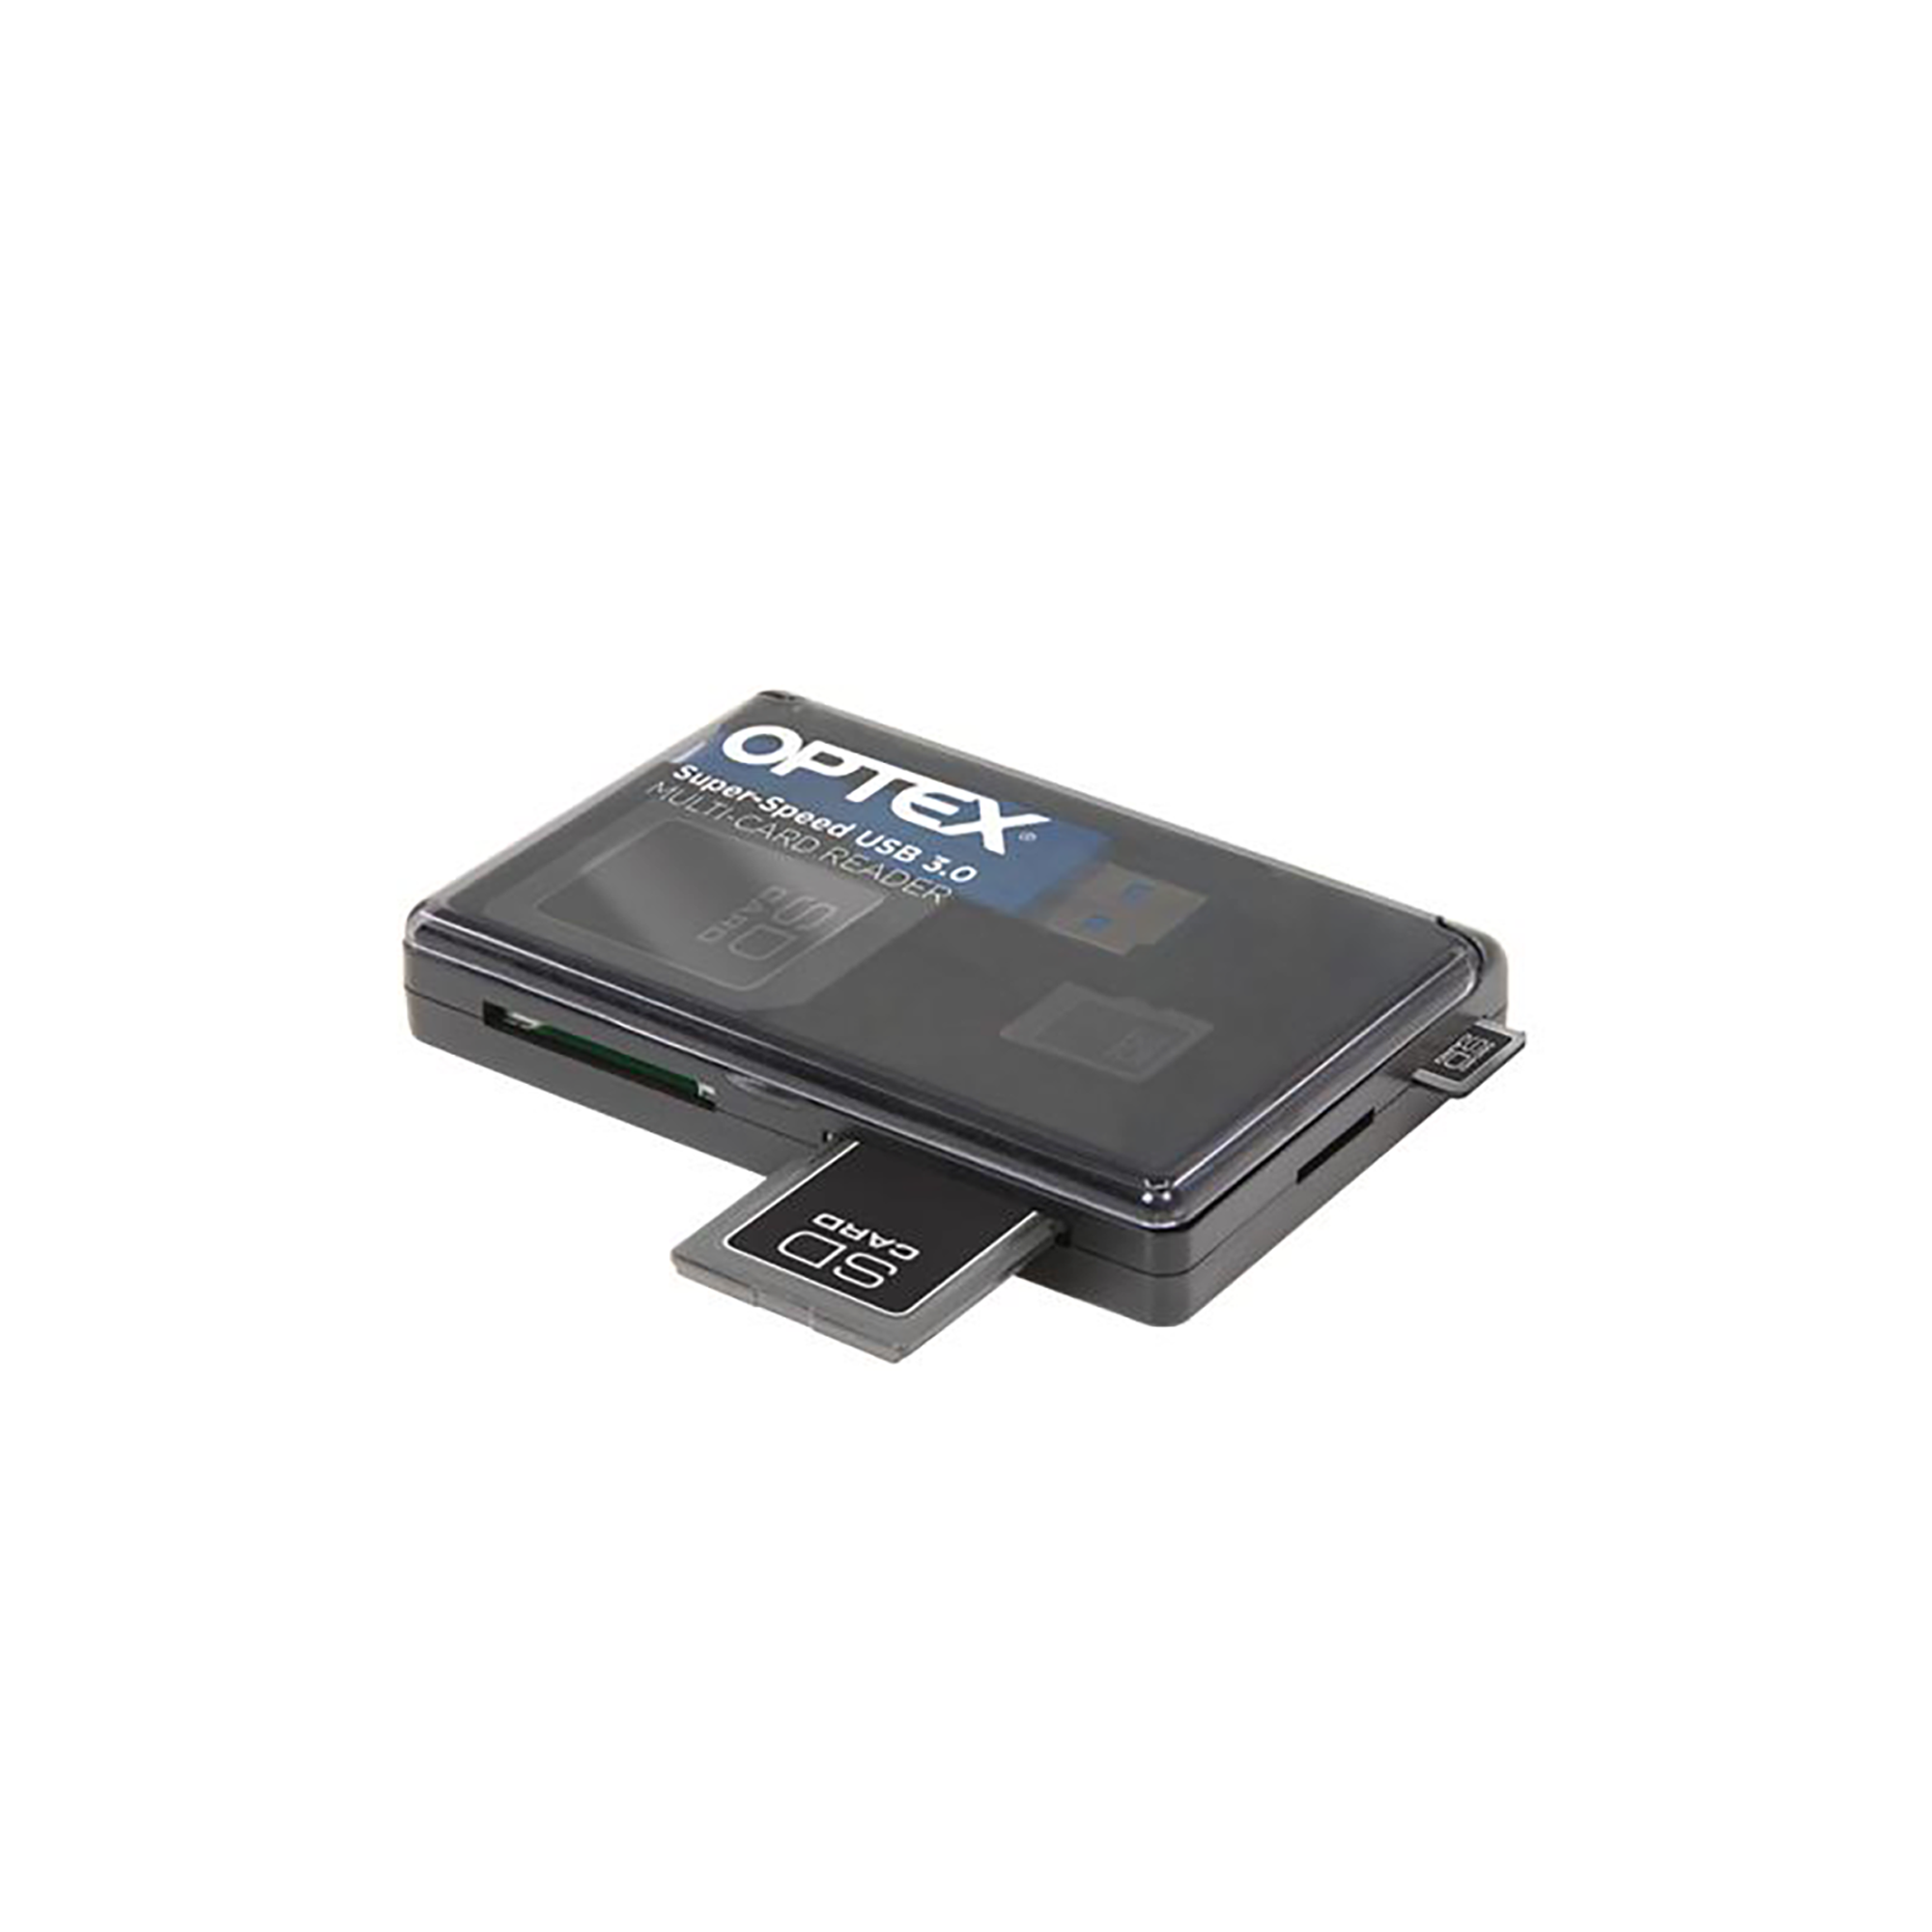 Lecteur multi-cartes compact OPTEX Superspeed USB 3.0 avec câble USB pliable et étui de protection (OR900)